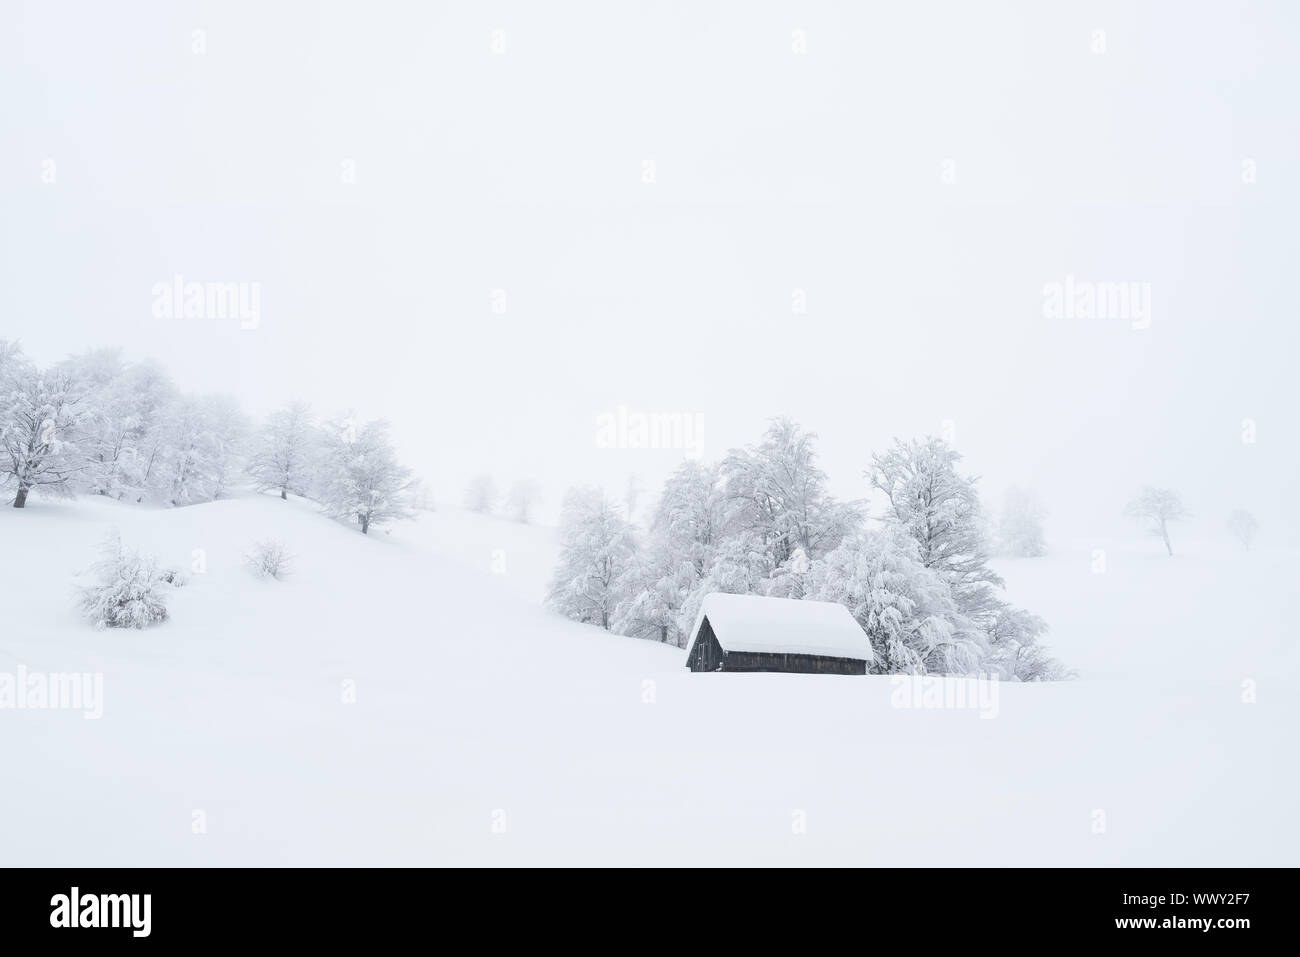 Winterlandschaft mit einem hölzernen Haus im Schnee. Schneefall und Nebel in einem Bergdorf. Datenschutz in einem abgelegenen natürlichen Platz Stockfoto